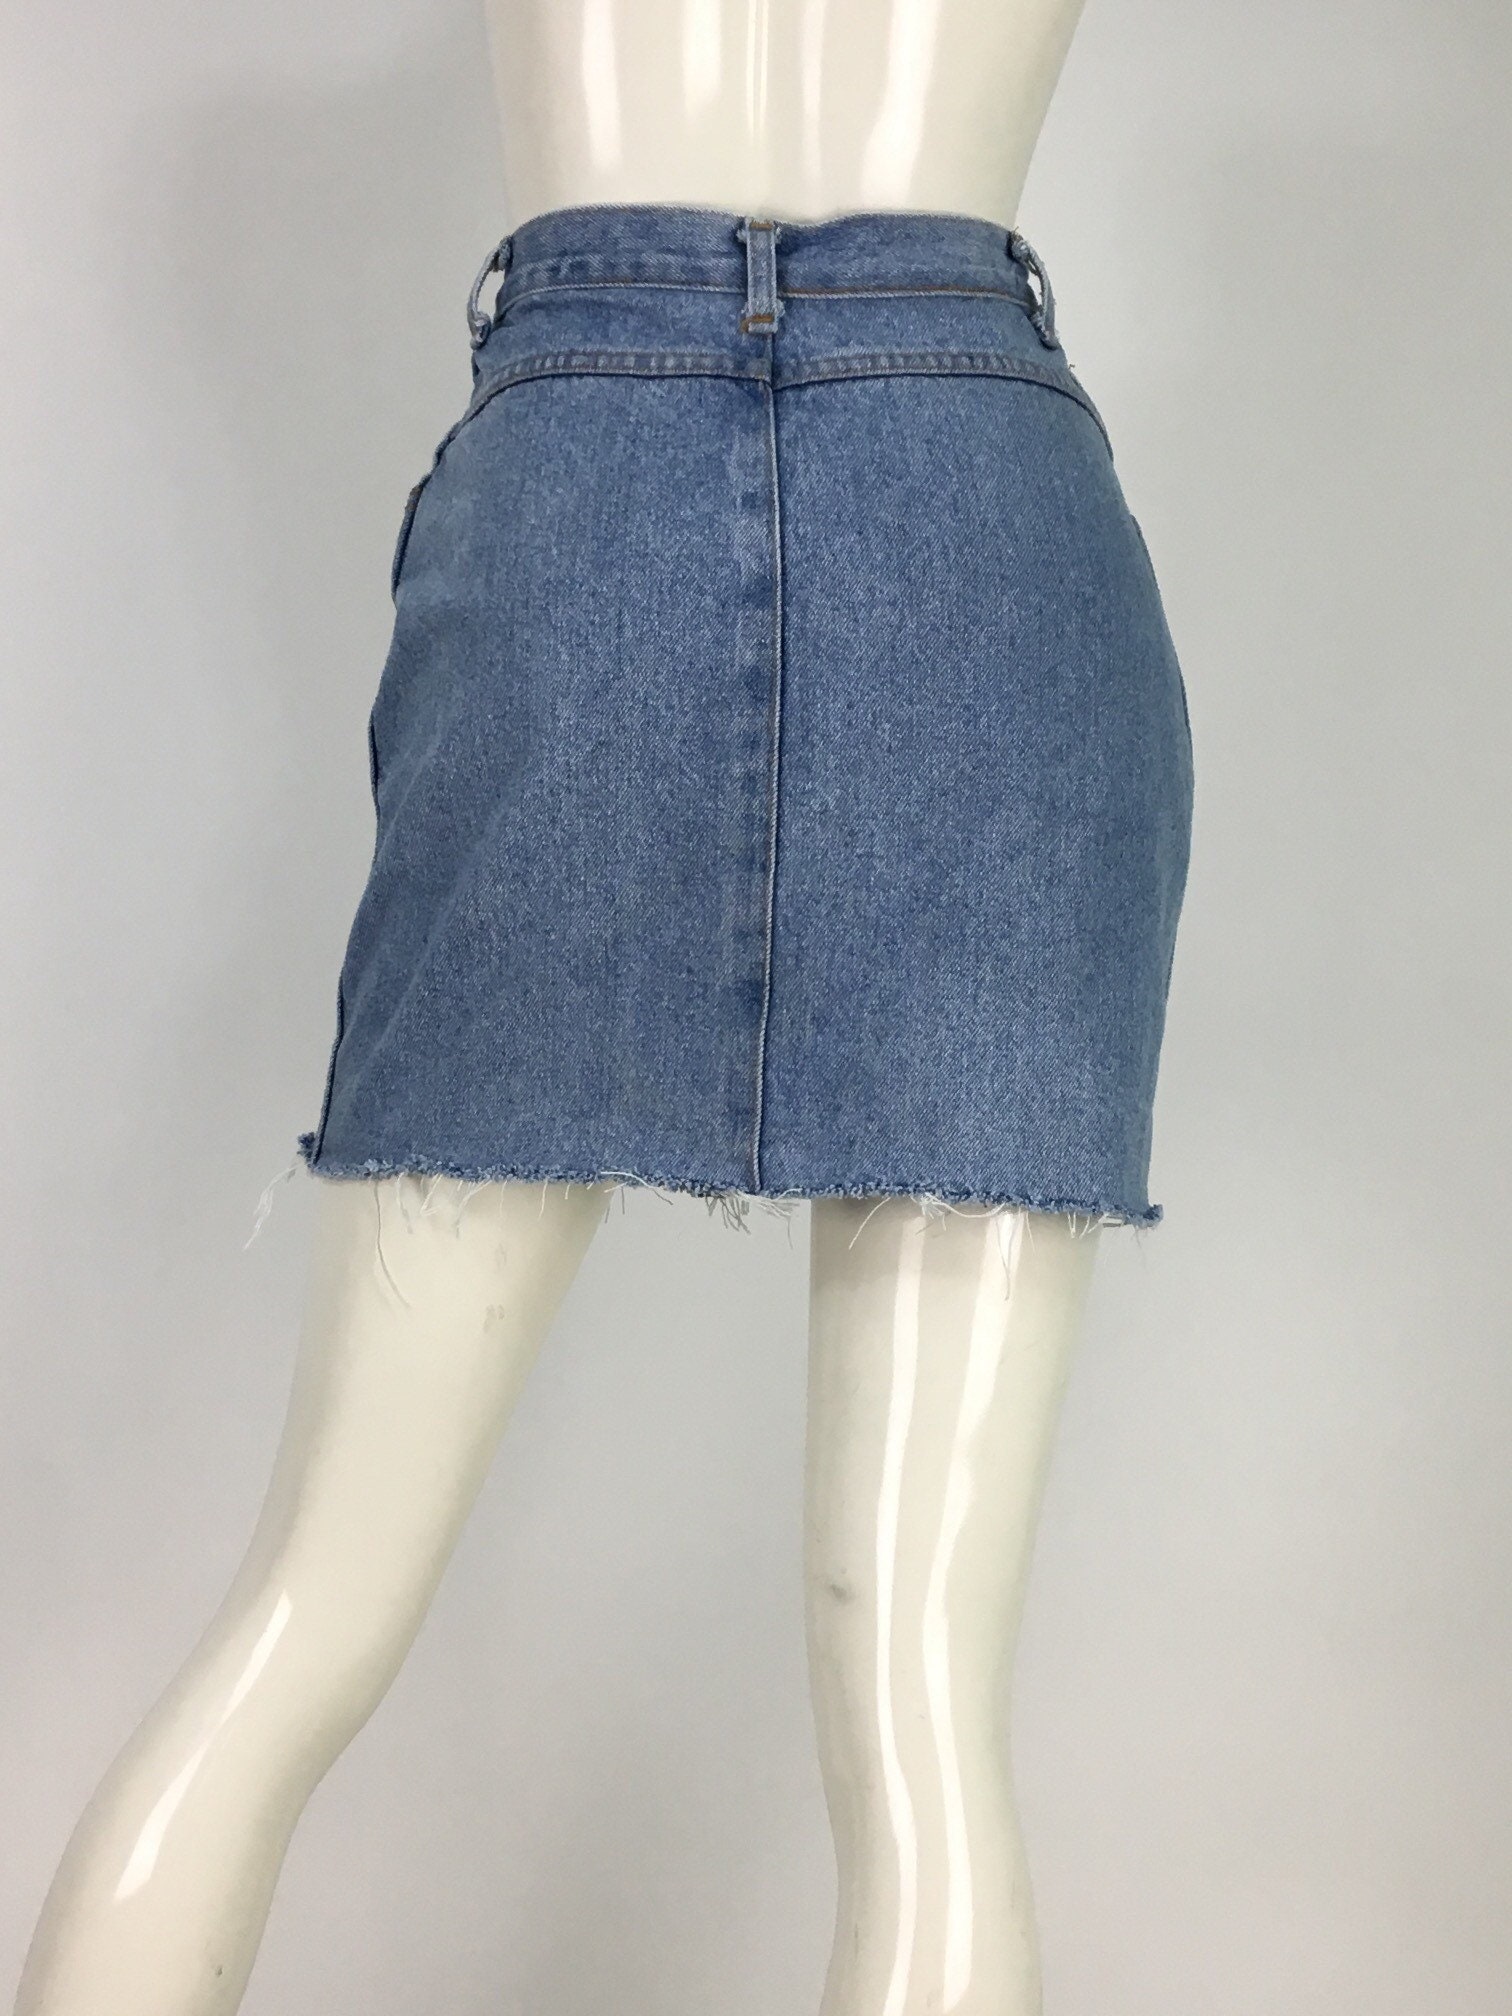 80s Jean Skirt/1980s Denim Skirt/vintage Jean Skirt/90s Jean - Etsy